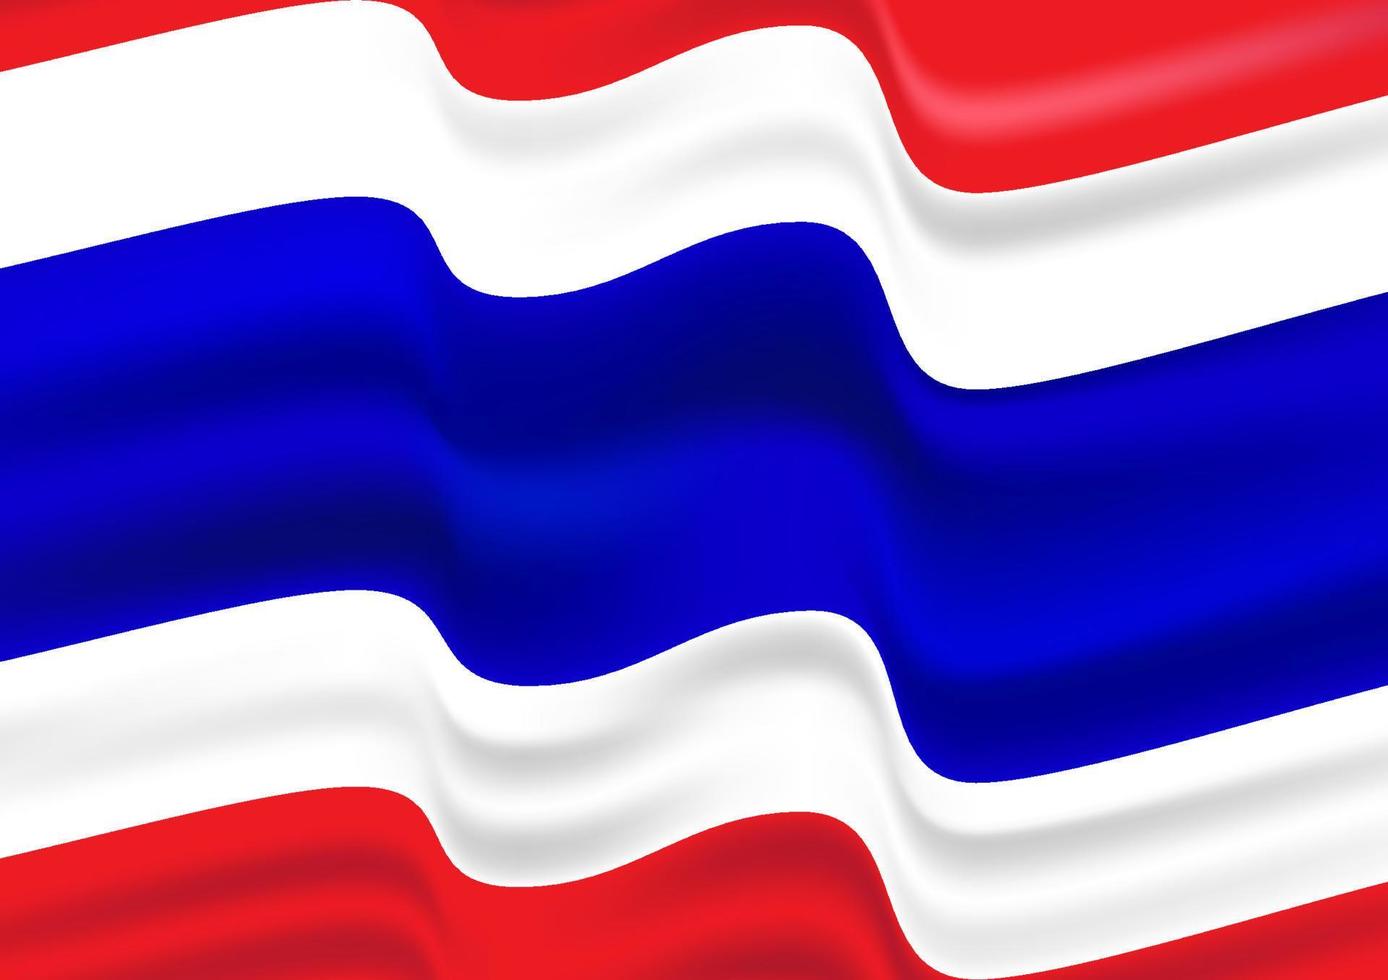 image graphique drapeau de la thaïlande avec 3 couleurs rouge, blanc, bleu pour l'illustration vectorielle d'arrière-plan vecteur